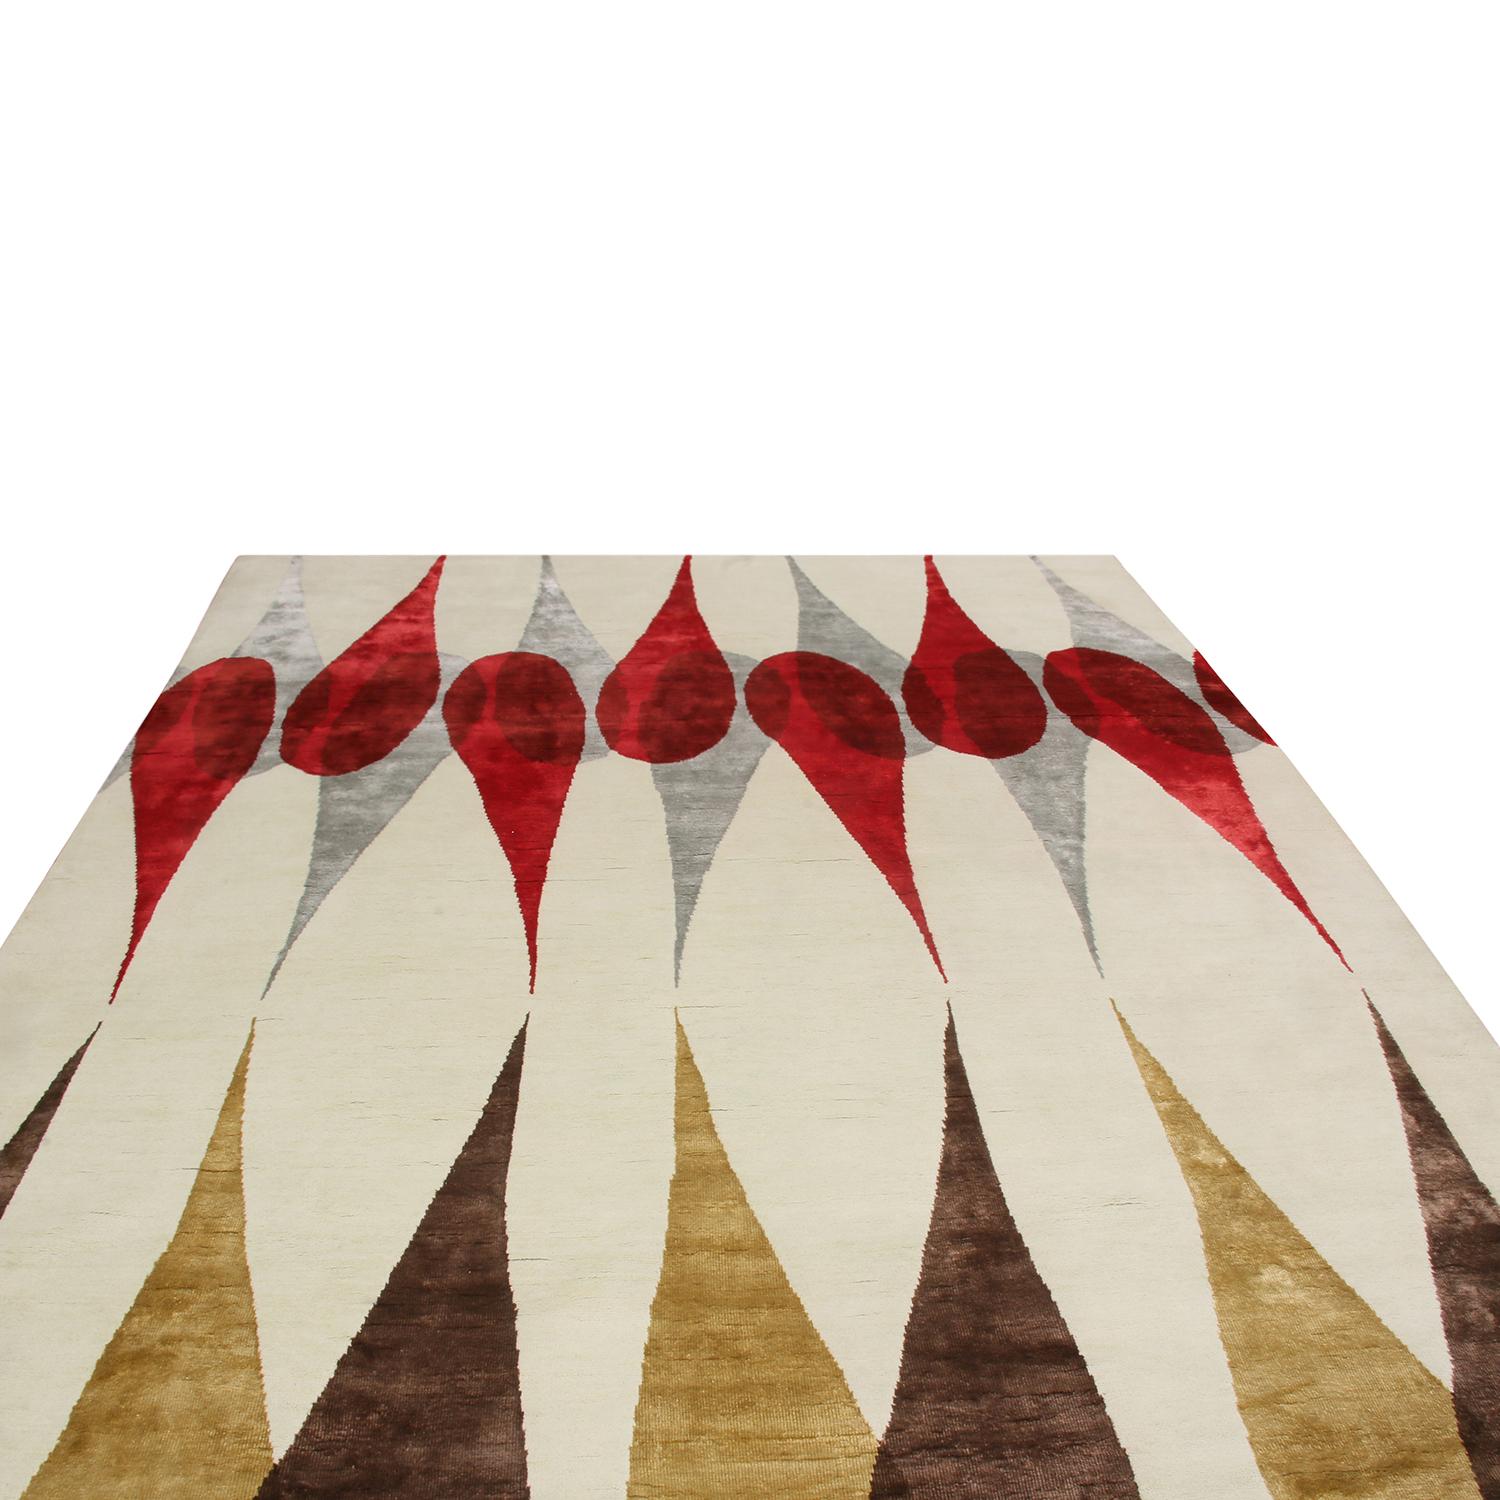 Un ajout 8x10 à la collection de tapis modernes du milieu du siècle, par Rug & Kilim en collaboration avec les œuvres de Campbell Laird.

Plus loin dans la conception 

Inspiré par le 